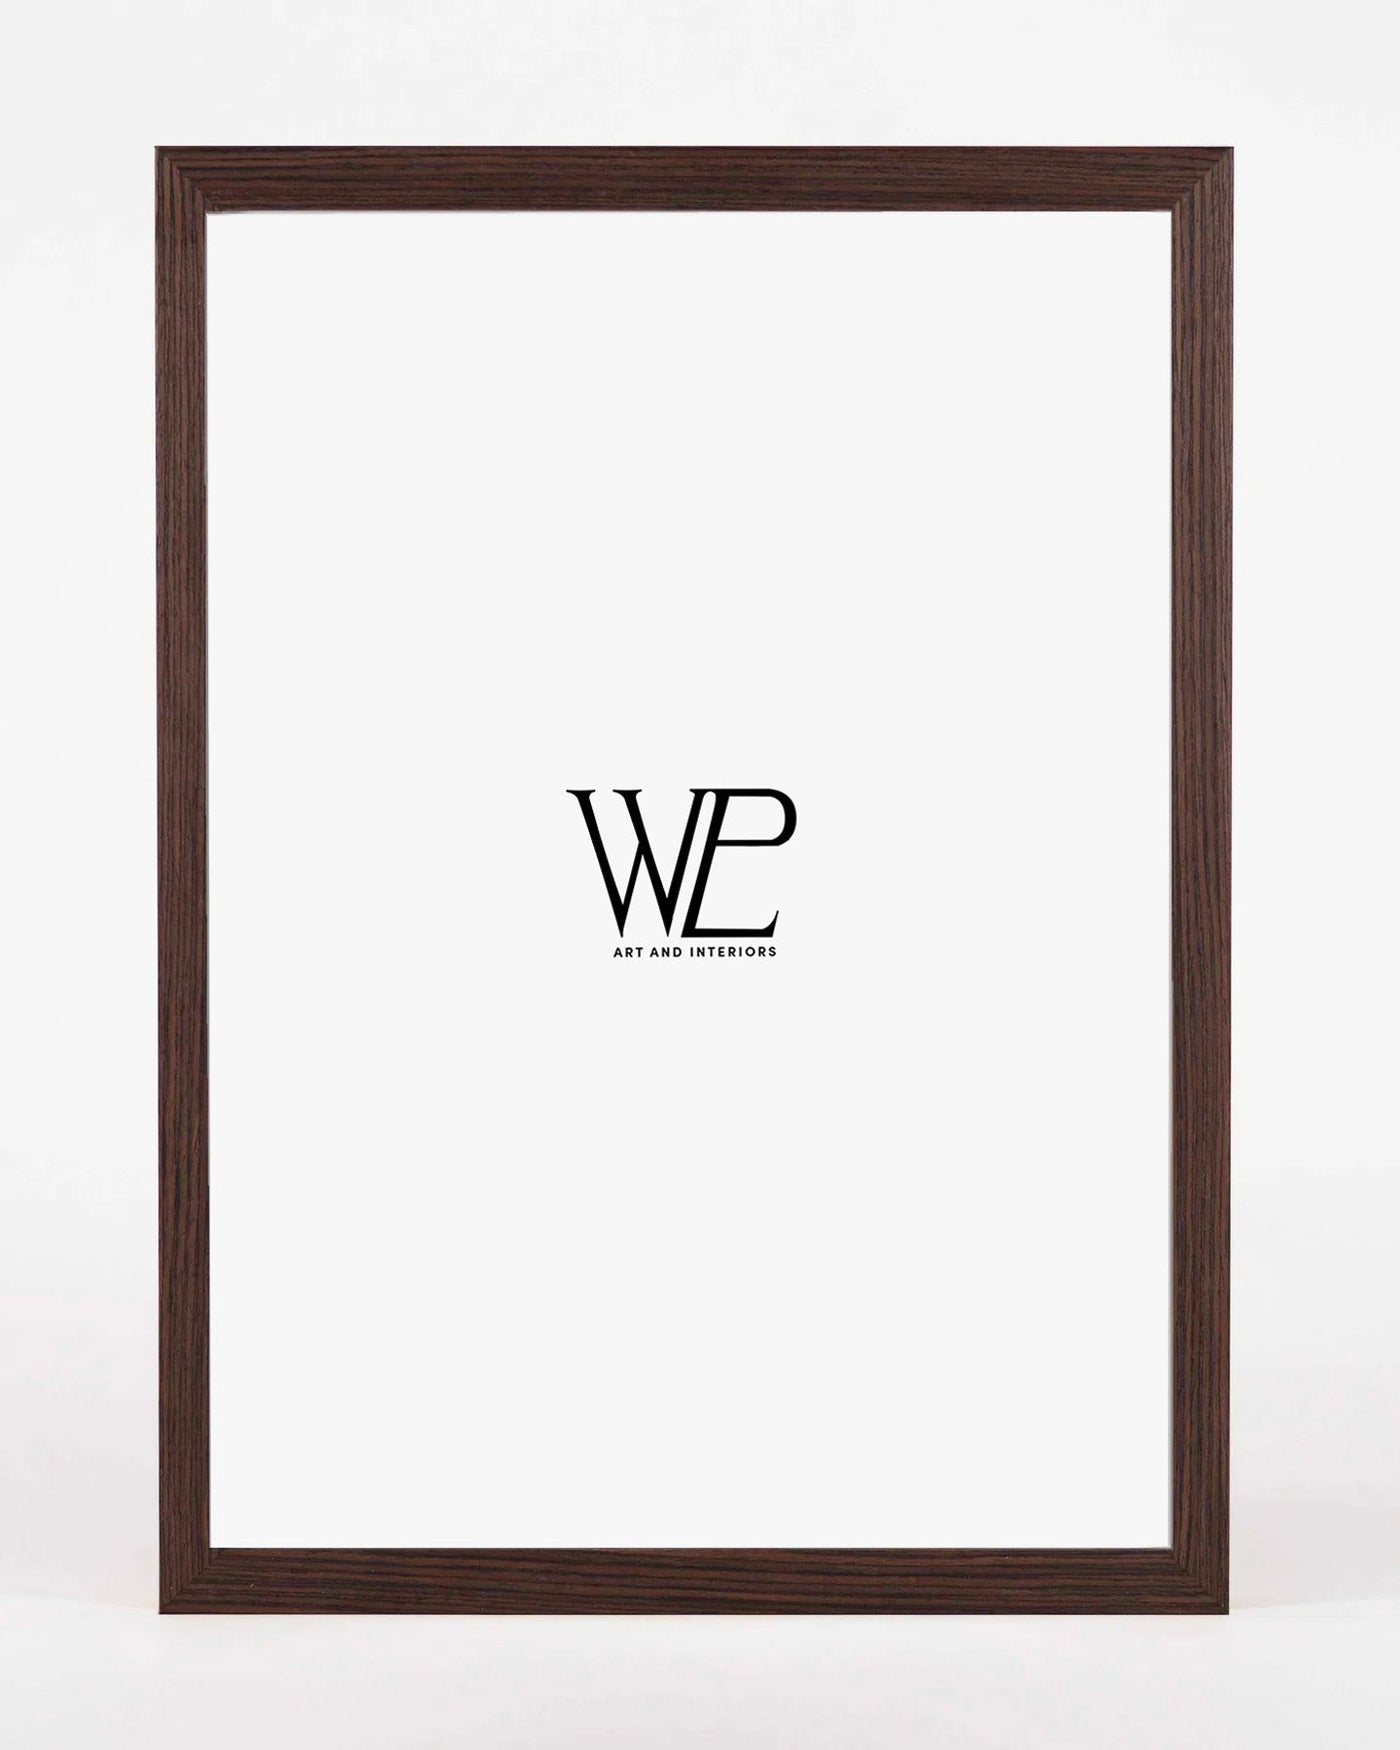 Premium Dark Walnut Picture Frame, 40x50cm Size Photo Frame